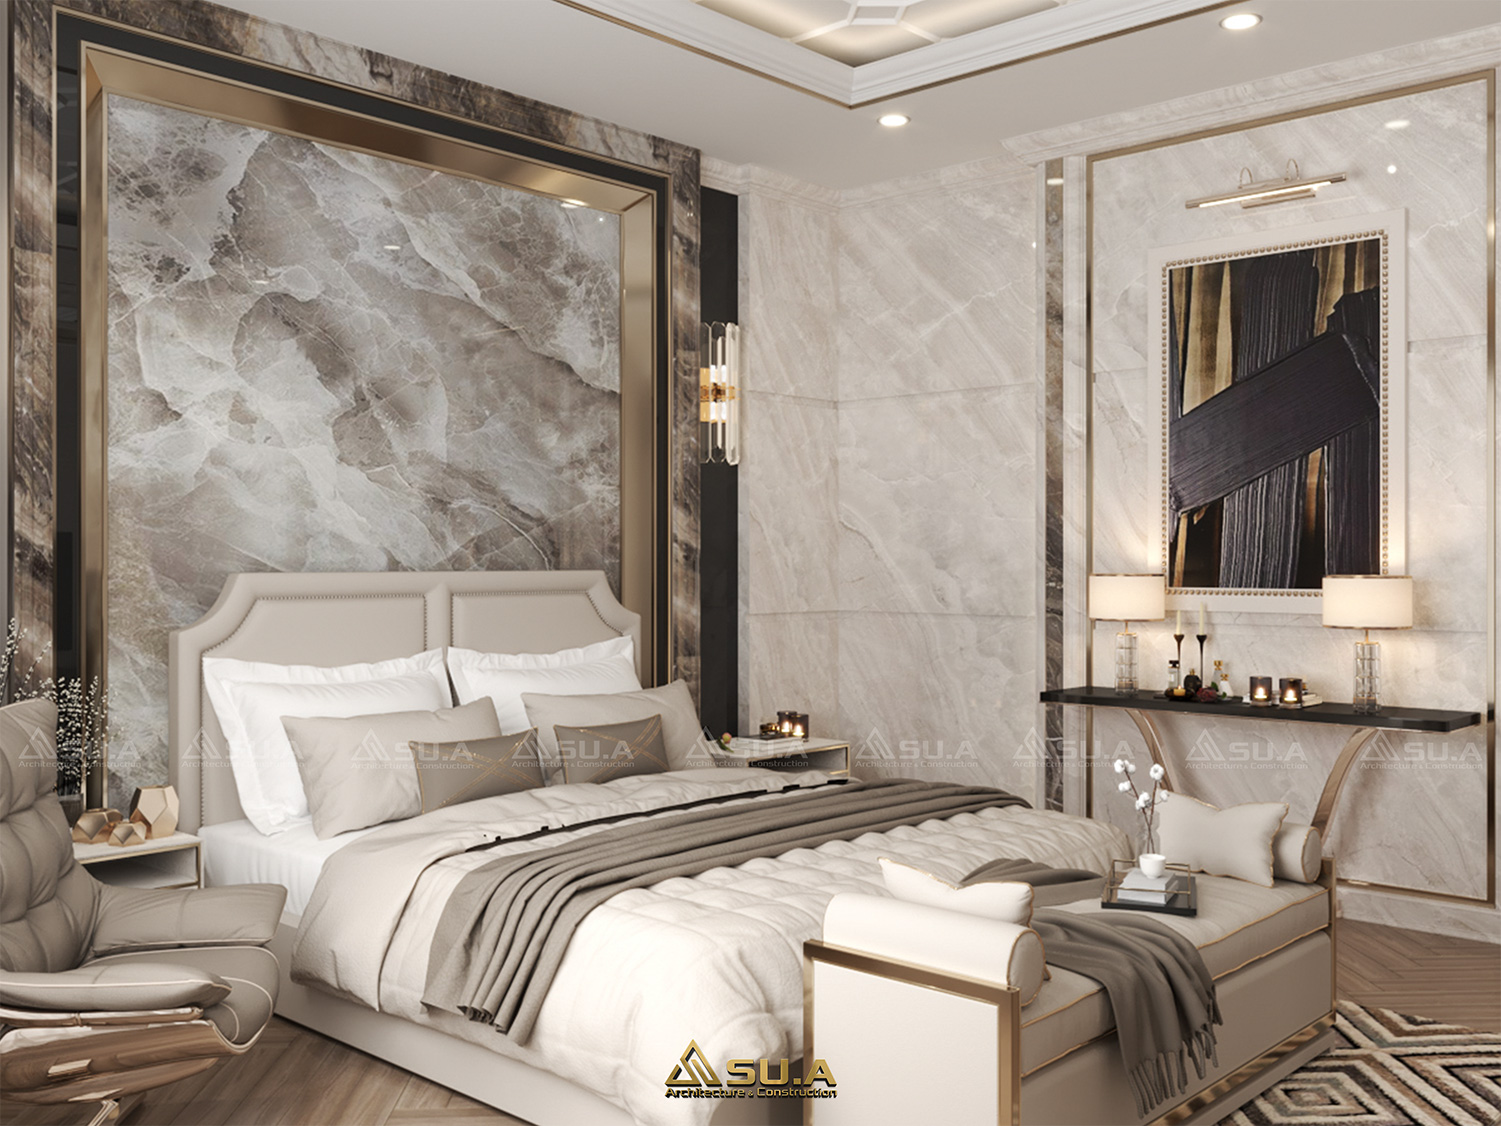 Mỗi một chi tiết trong phòng ngủ luxury đều được chú trọng, trau chuốt tỉ mỉ